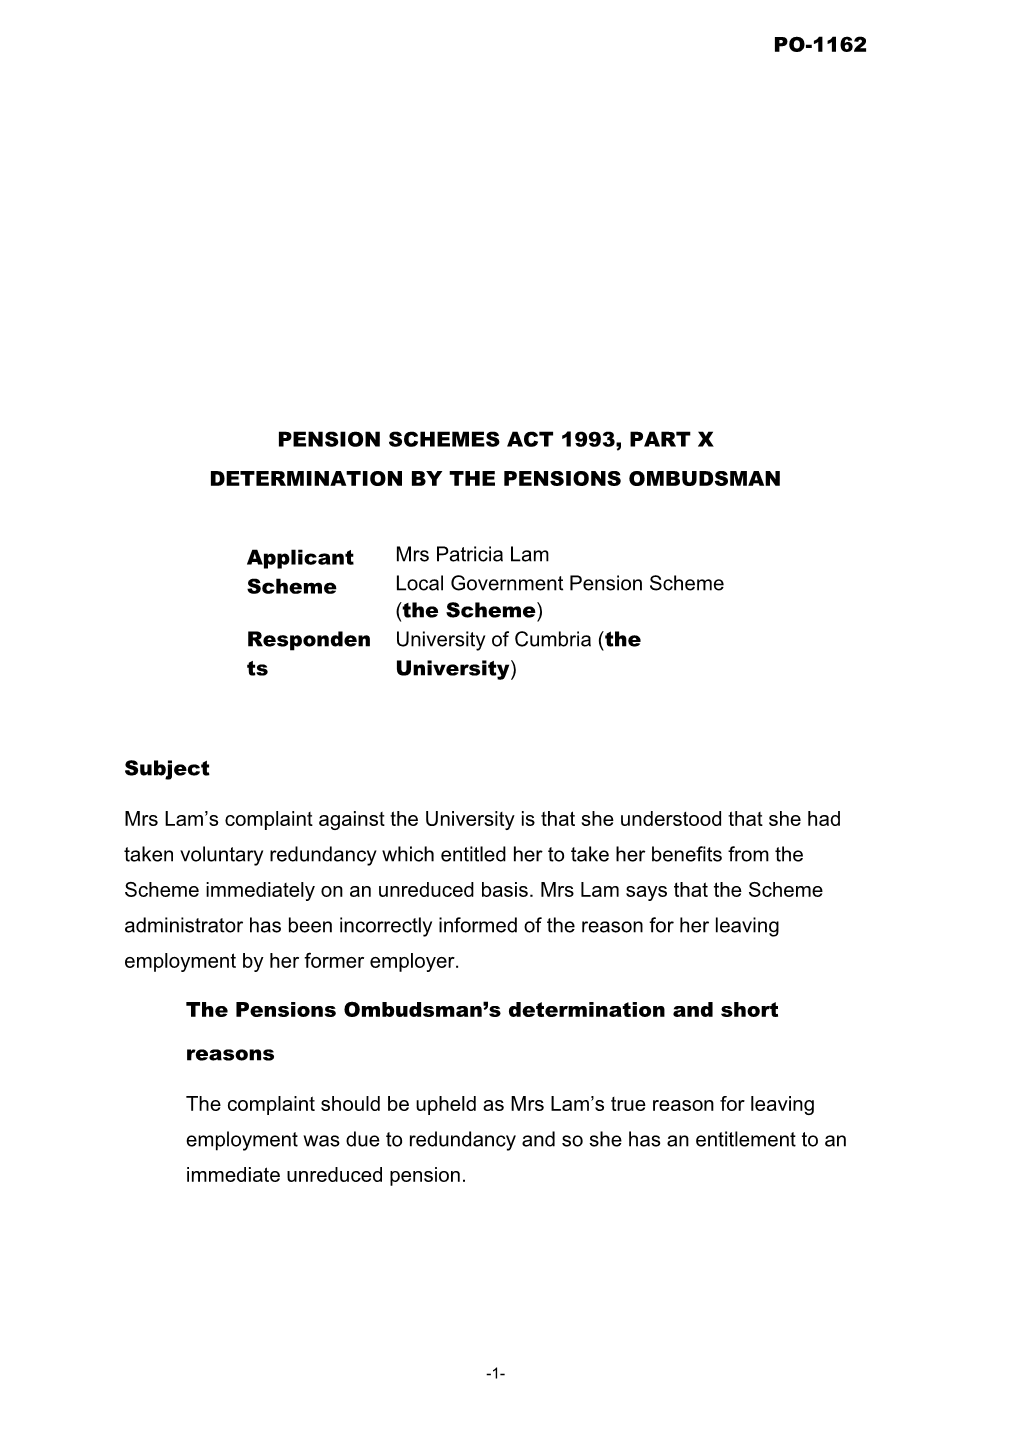 Pension Schemes Act 1993, Part X s31